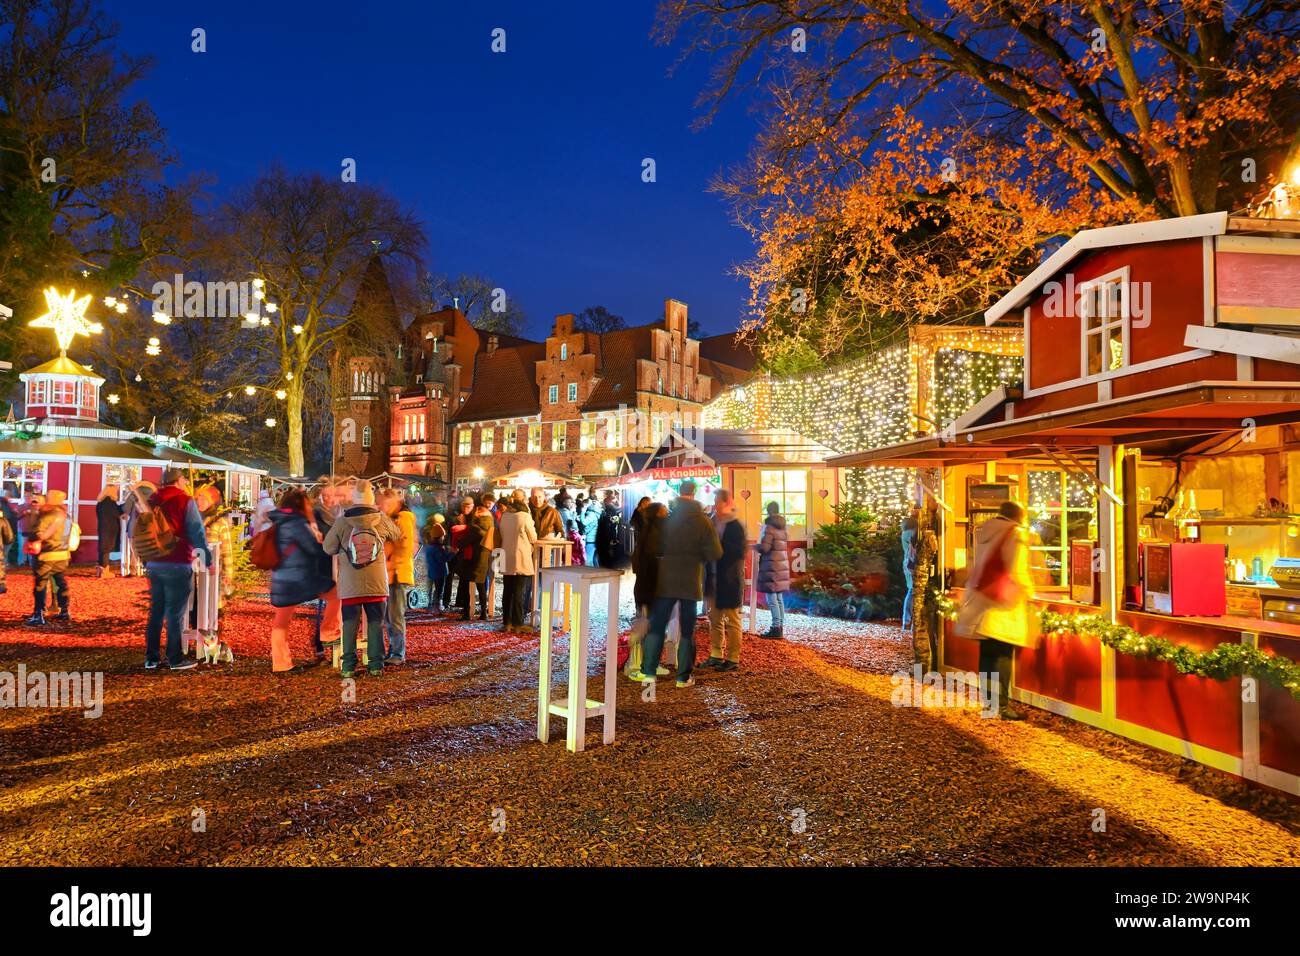 Weihnachtsmarkt Auf Schloss Bergedorf, Bergedorf, Hamburg, Deutschland, Europa Stockfoto